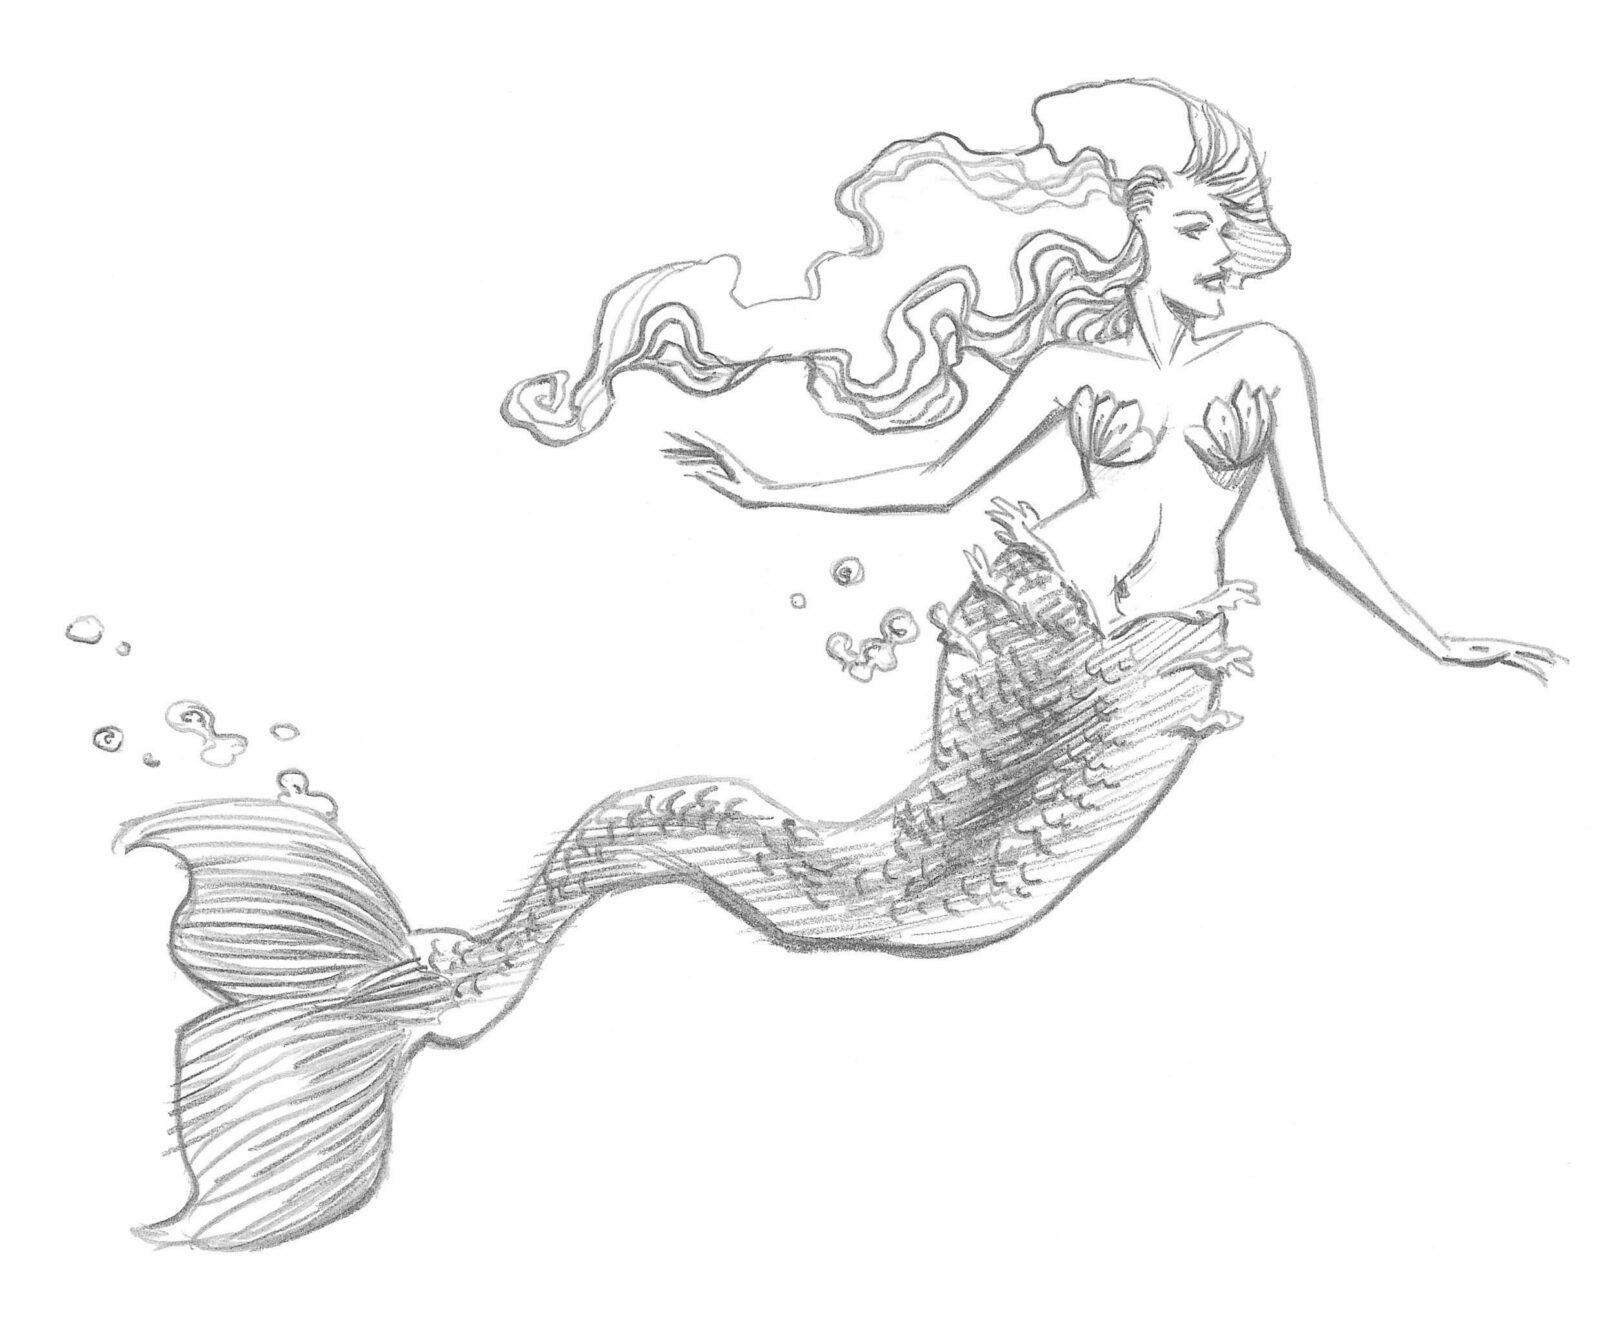 Create a Watercolor Mermaid Illustration in Adobe Illustrator | Envato Tuts+